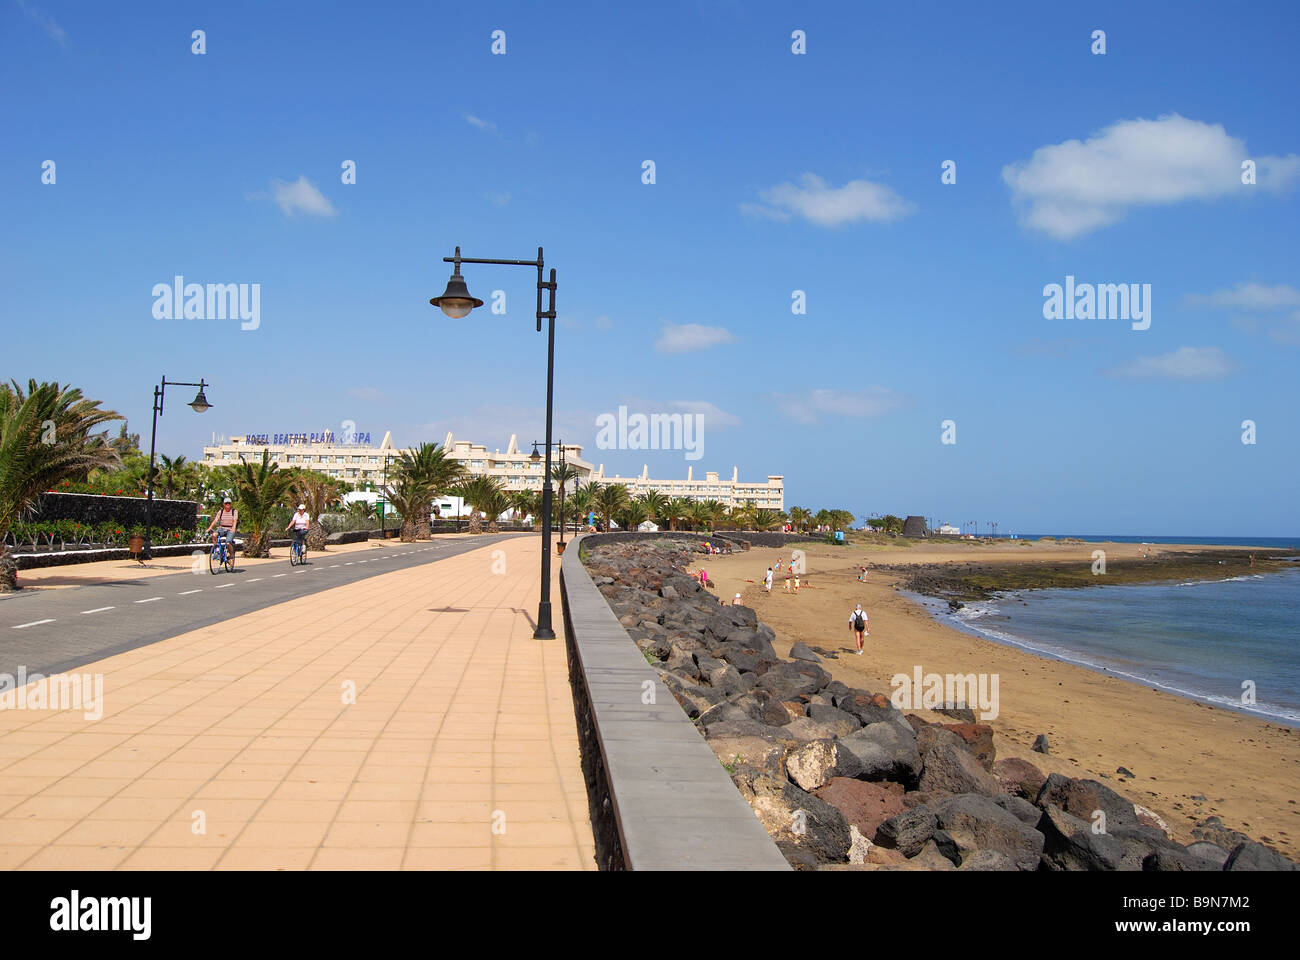 La playa y el paseo marítimo, la Playa de Matagorda, Puerto del Carmen,  Lanzarote, Islas Canarias, España Fotografía de stock - Alamy